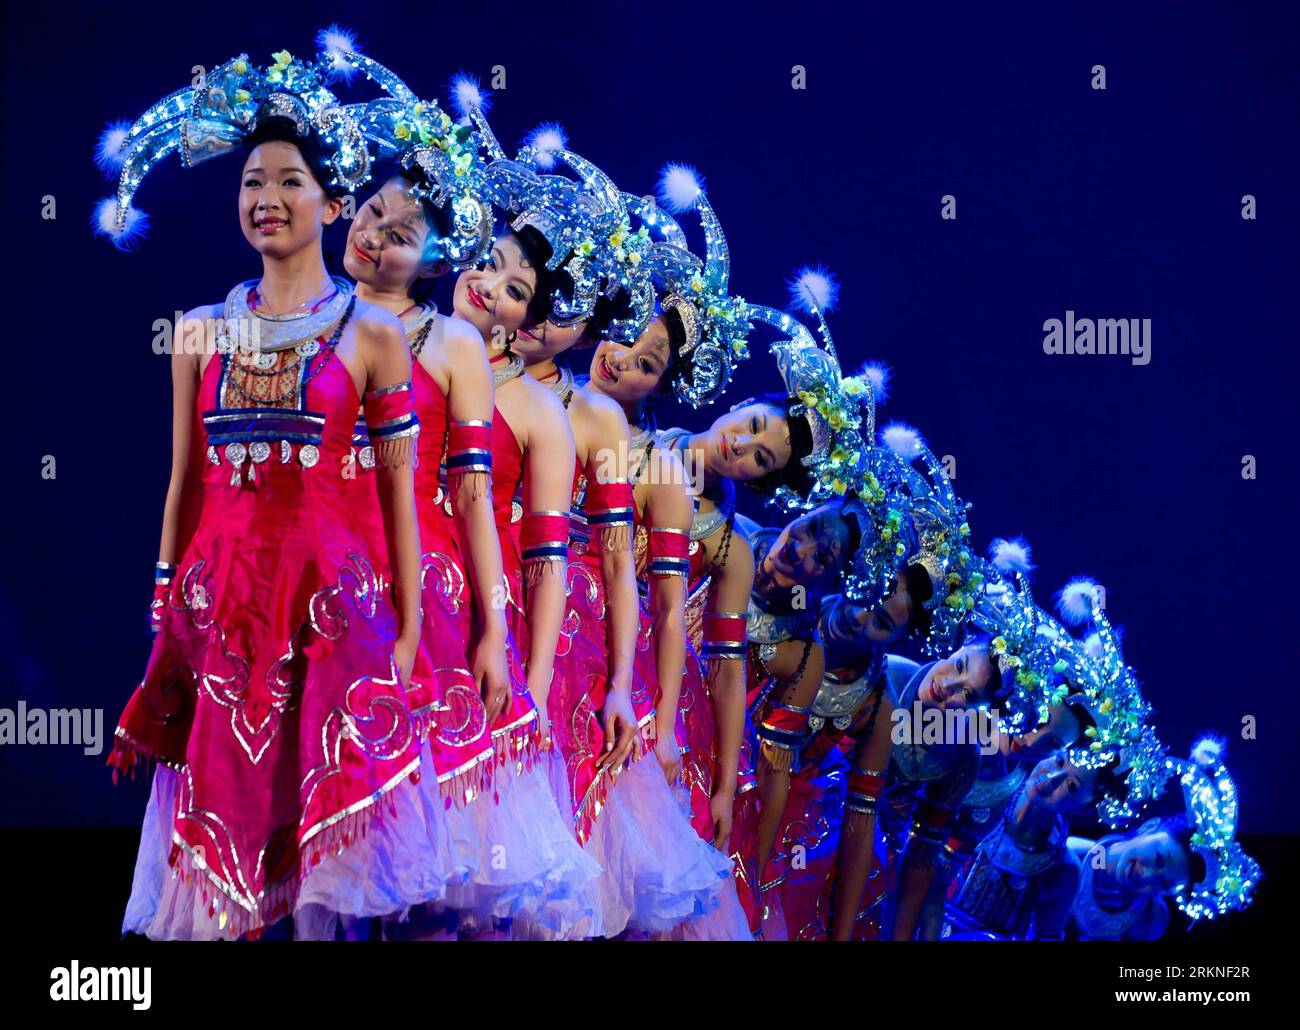 Bildnummer : 57107637 Datum : 25.02.2012 Copyright : imago/Xinhua (120225) -- MELBOURNE, 25 février 2012 (Xinhua) -- des danseurs de la compagnie de chant et de danse folklorique du sud-ouest de la Chine, la province du Guizhou, se produisent à Melbourne, en Australie, le 25 février 2012. Près de 2 000 spectateurs ont regardé l'émission. (Xinhua/Bai Xue) (dzl) AUSTRALIE-CHINESE-FOLK DANSE-PERFORMANCE PUBLICATIONxNOTxINxCHN Kultur Tanz Aktion x0x xsk 2012 quer 57107637 Date 25 02 2012 Copyright Imago XINHUA Melbourne février 25 2012 des danseurs XINHUA de la Folk Song and Dance Company du sud-ouest de la Chine S Guizhou province se produisent à Melbourne Aust Banque D'Images